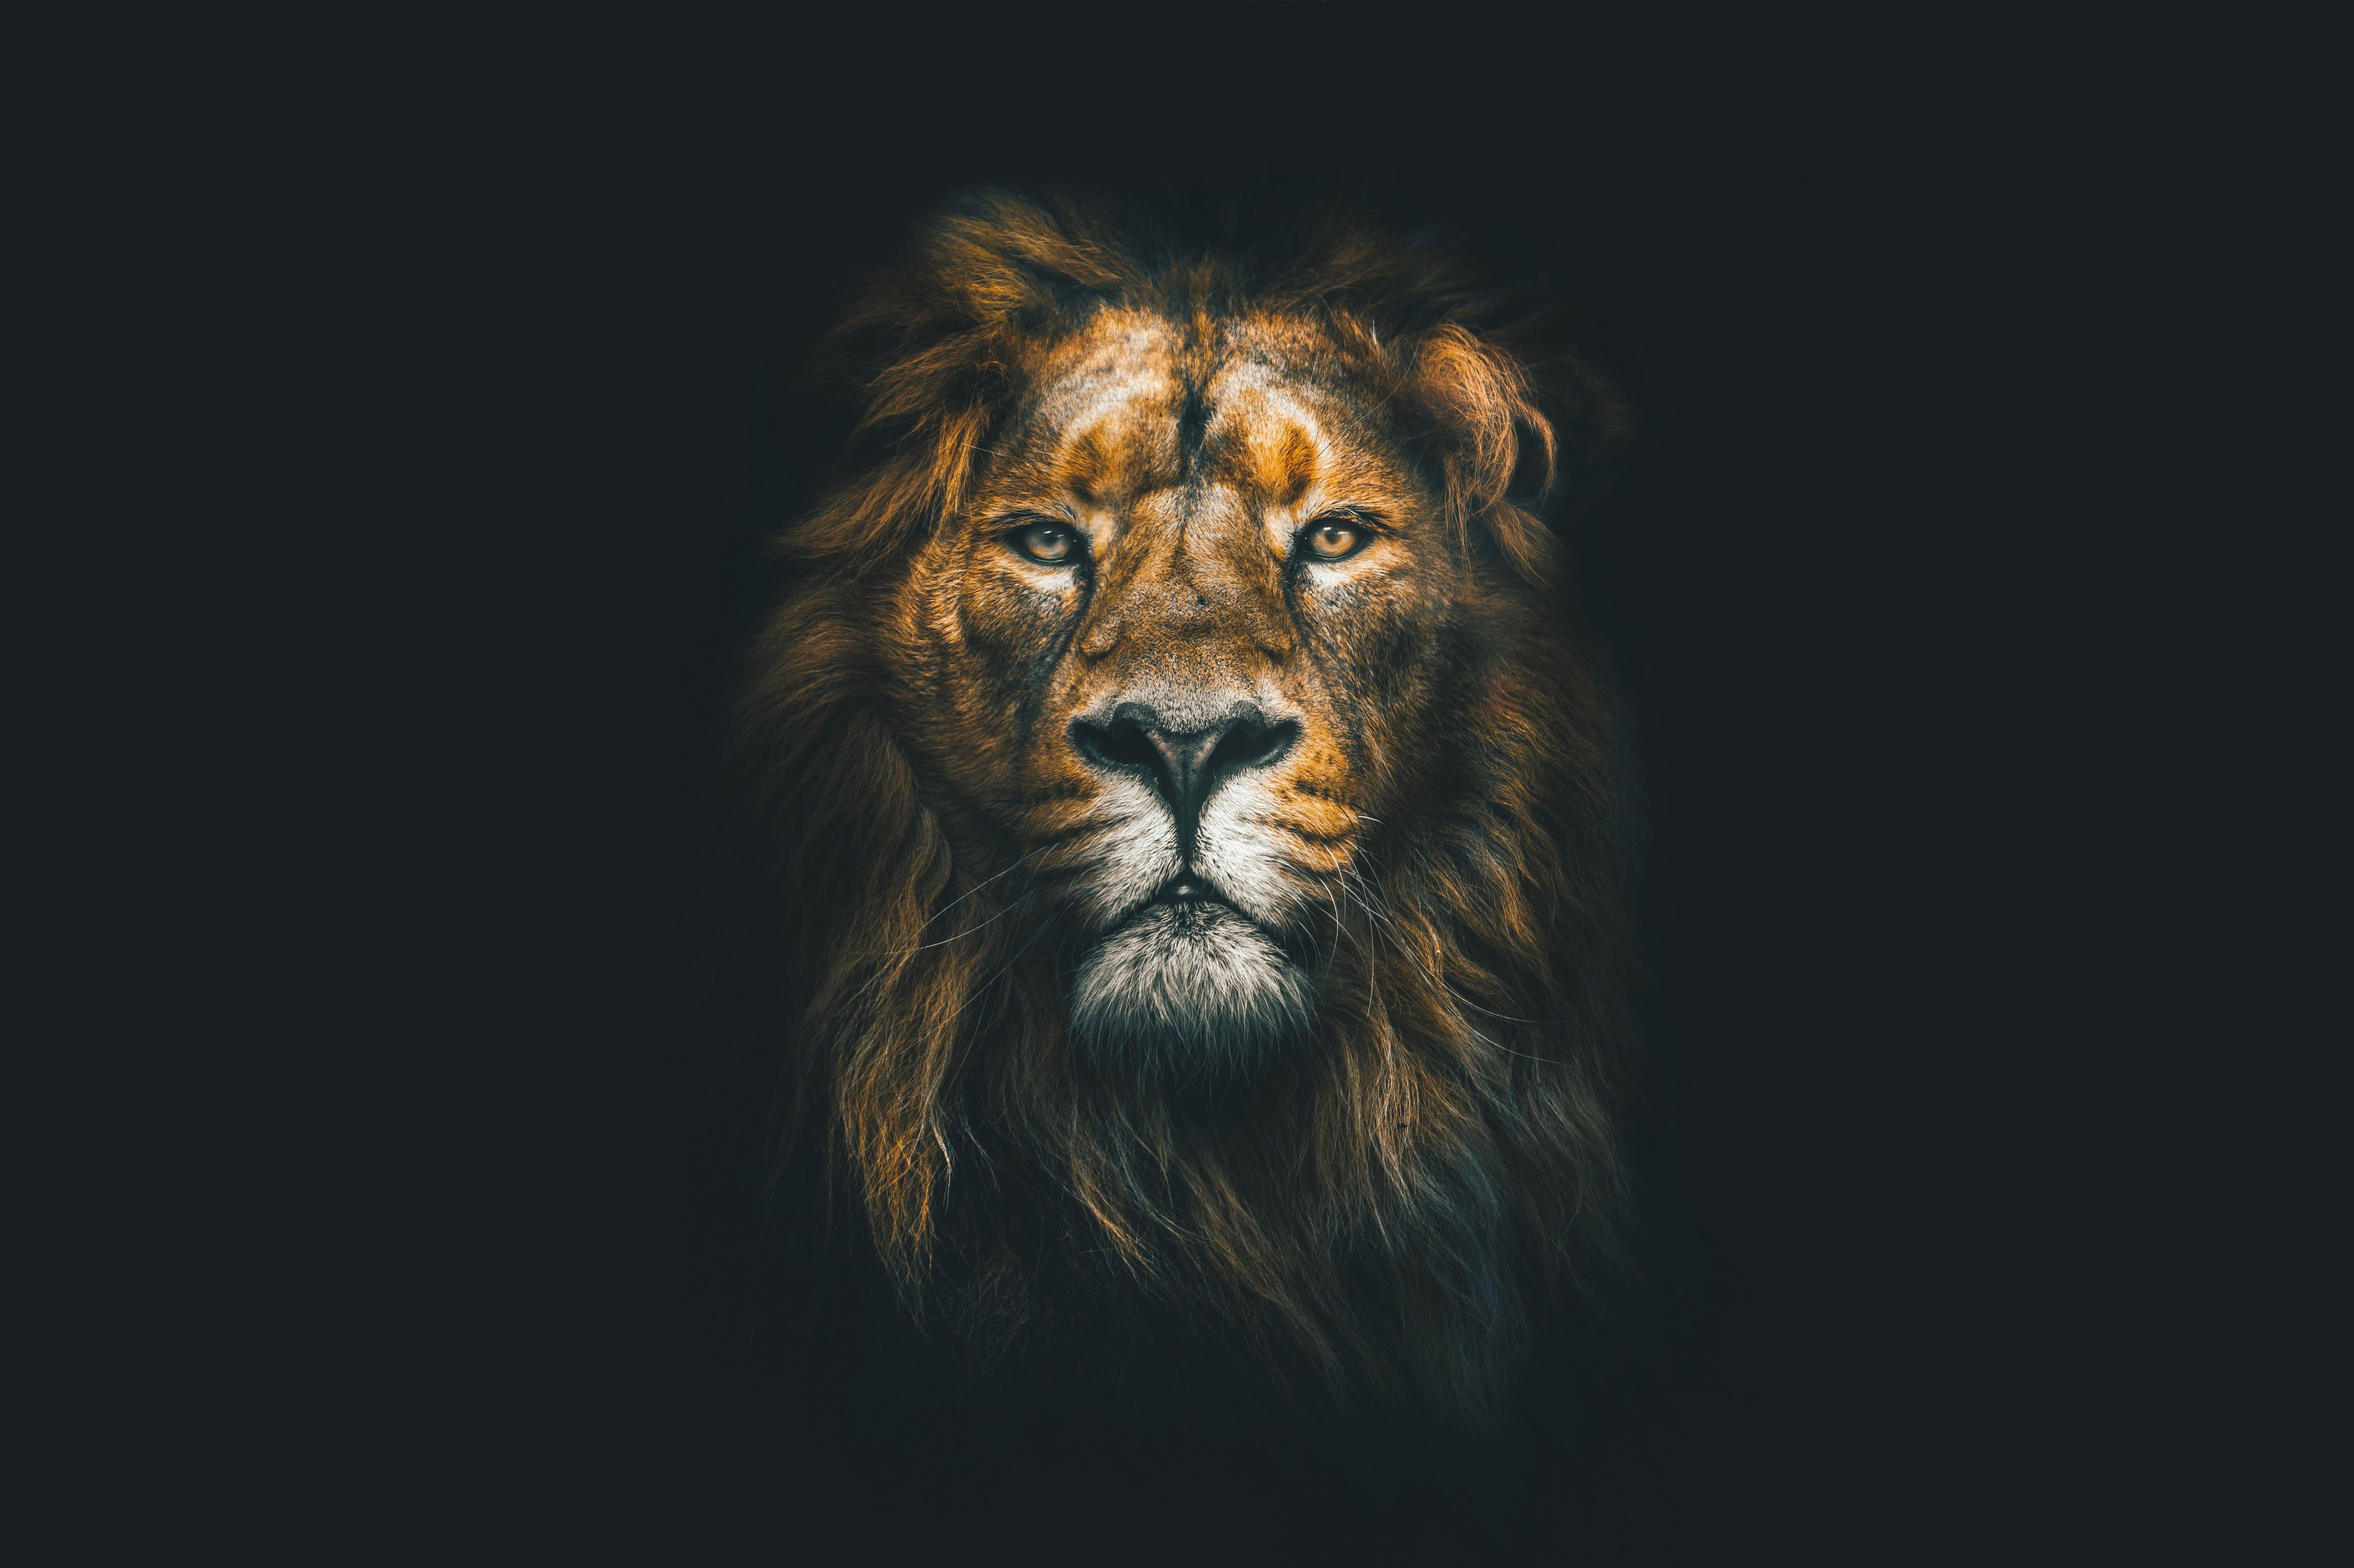 A beautiful lion